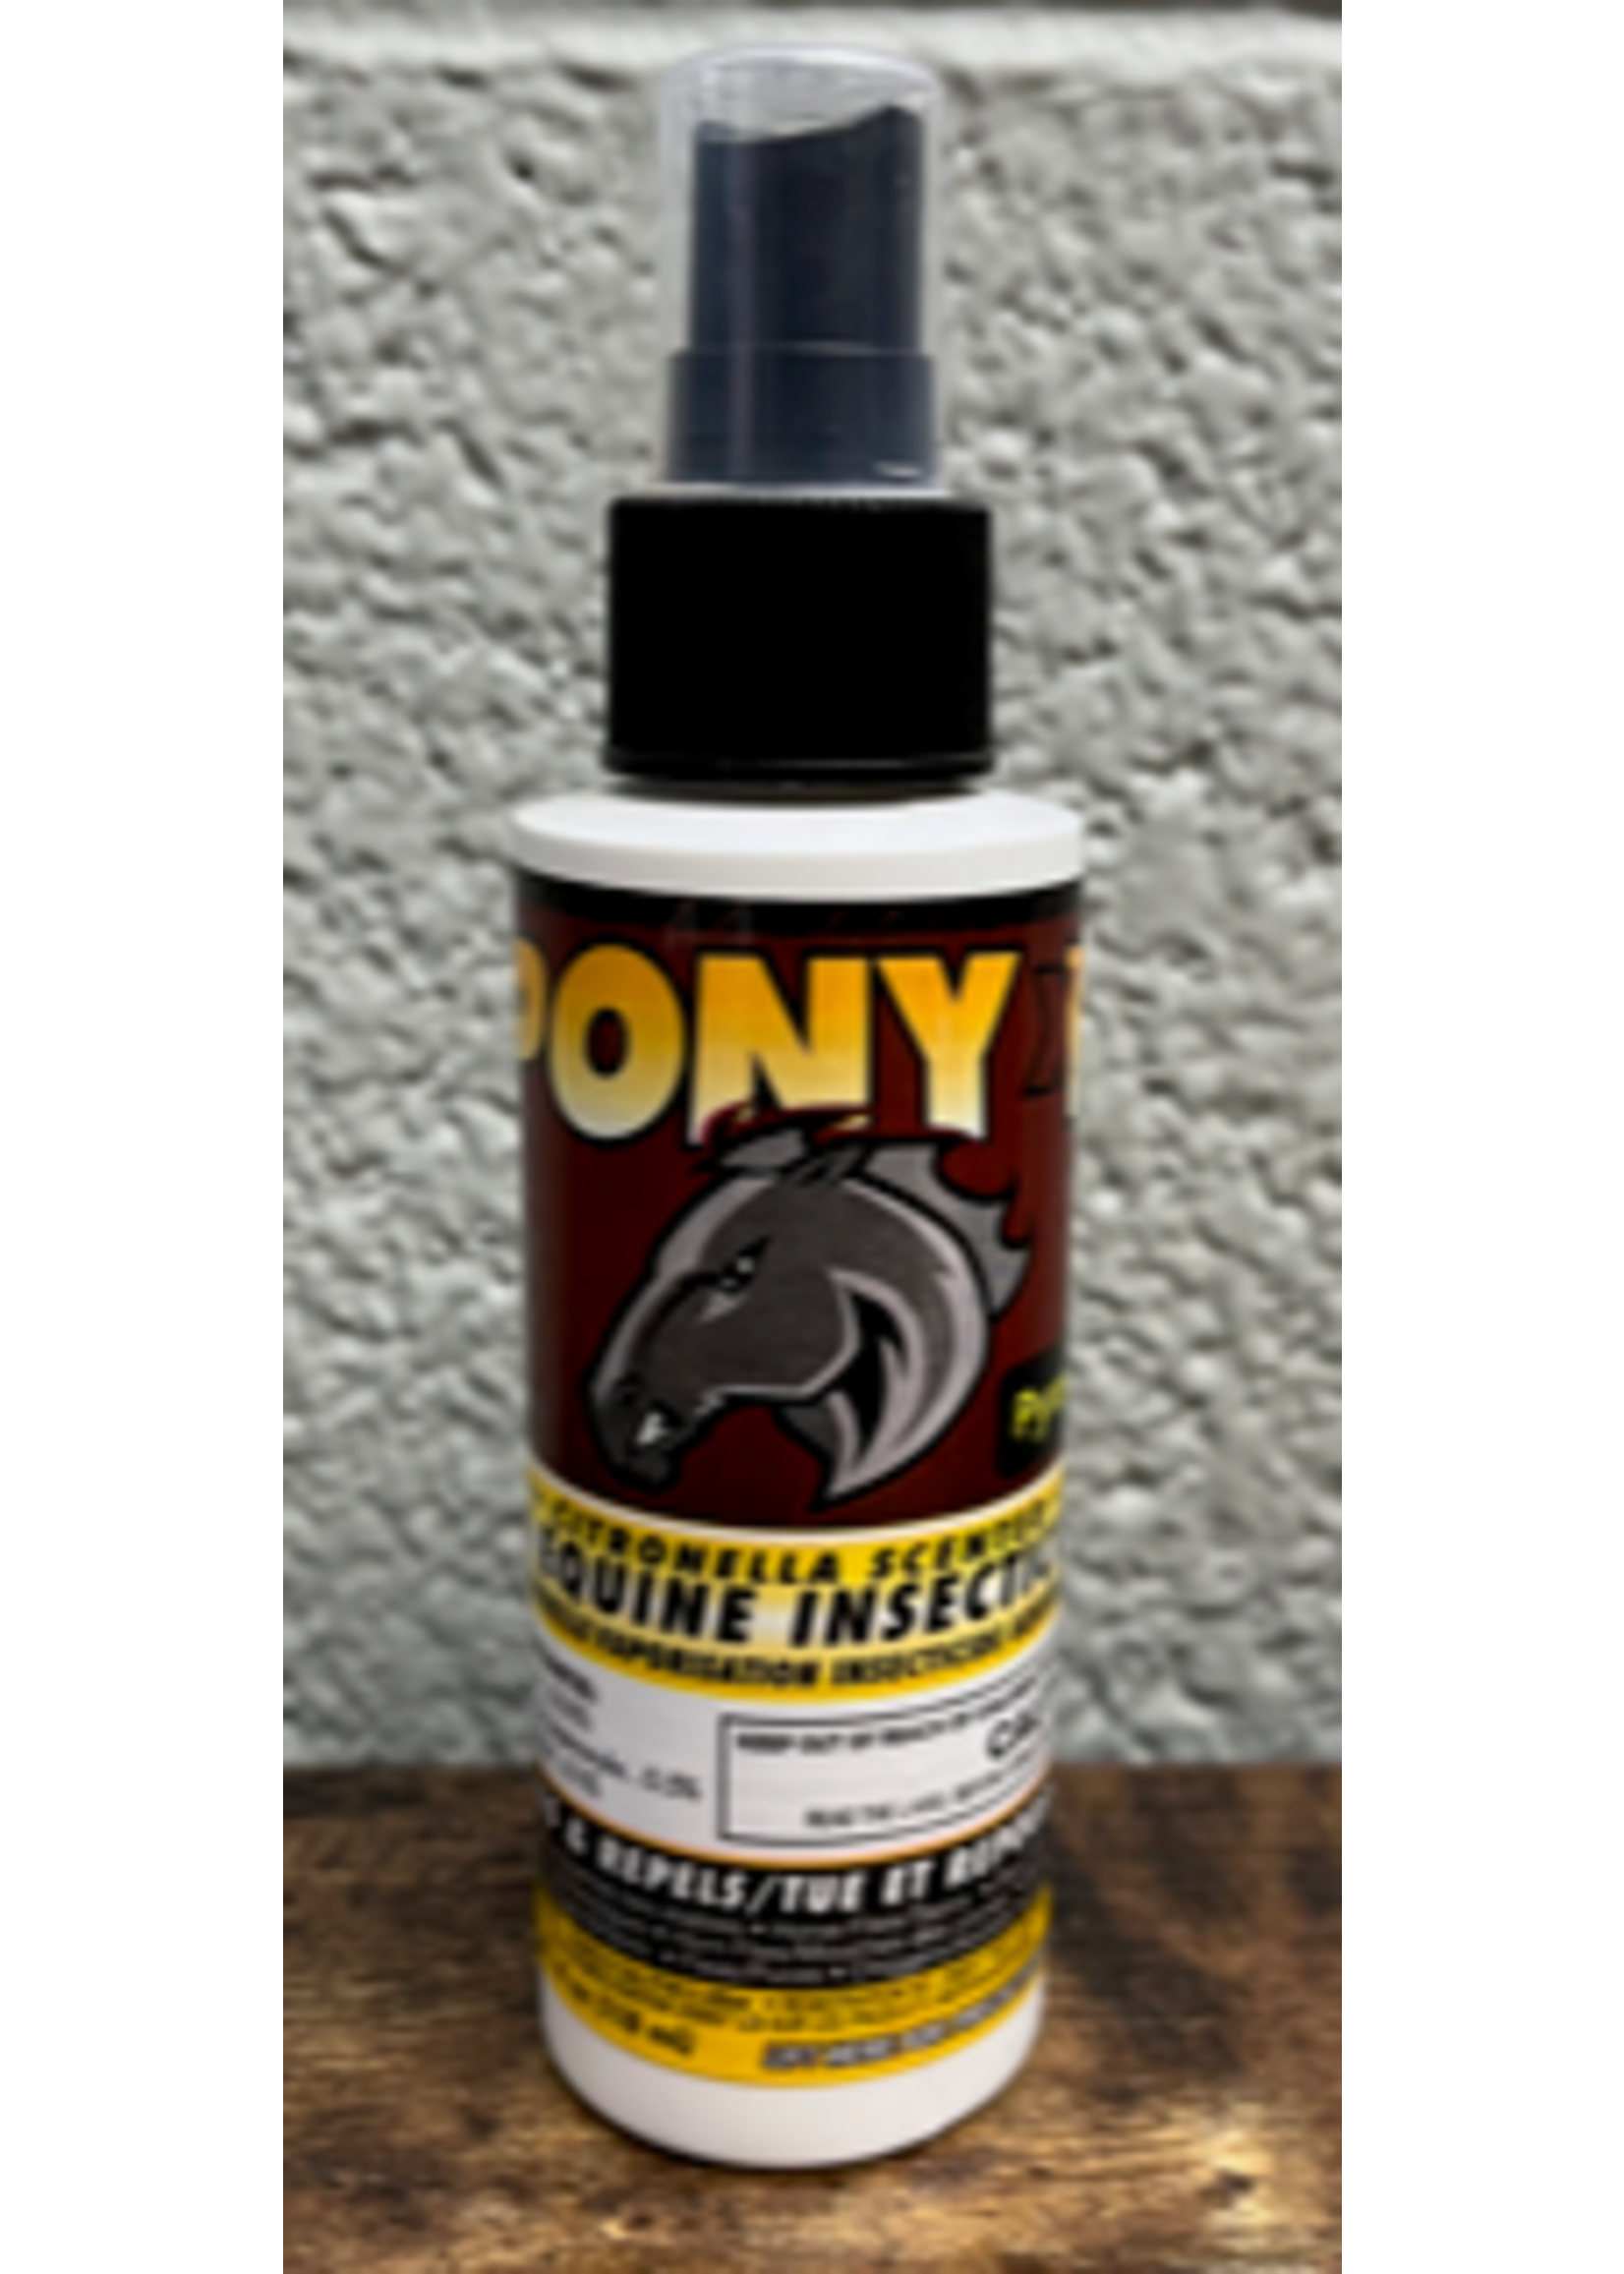 Pony XP Aqueous Equine Insecticide Spray 4oz